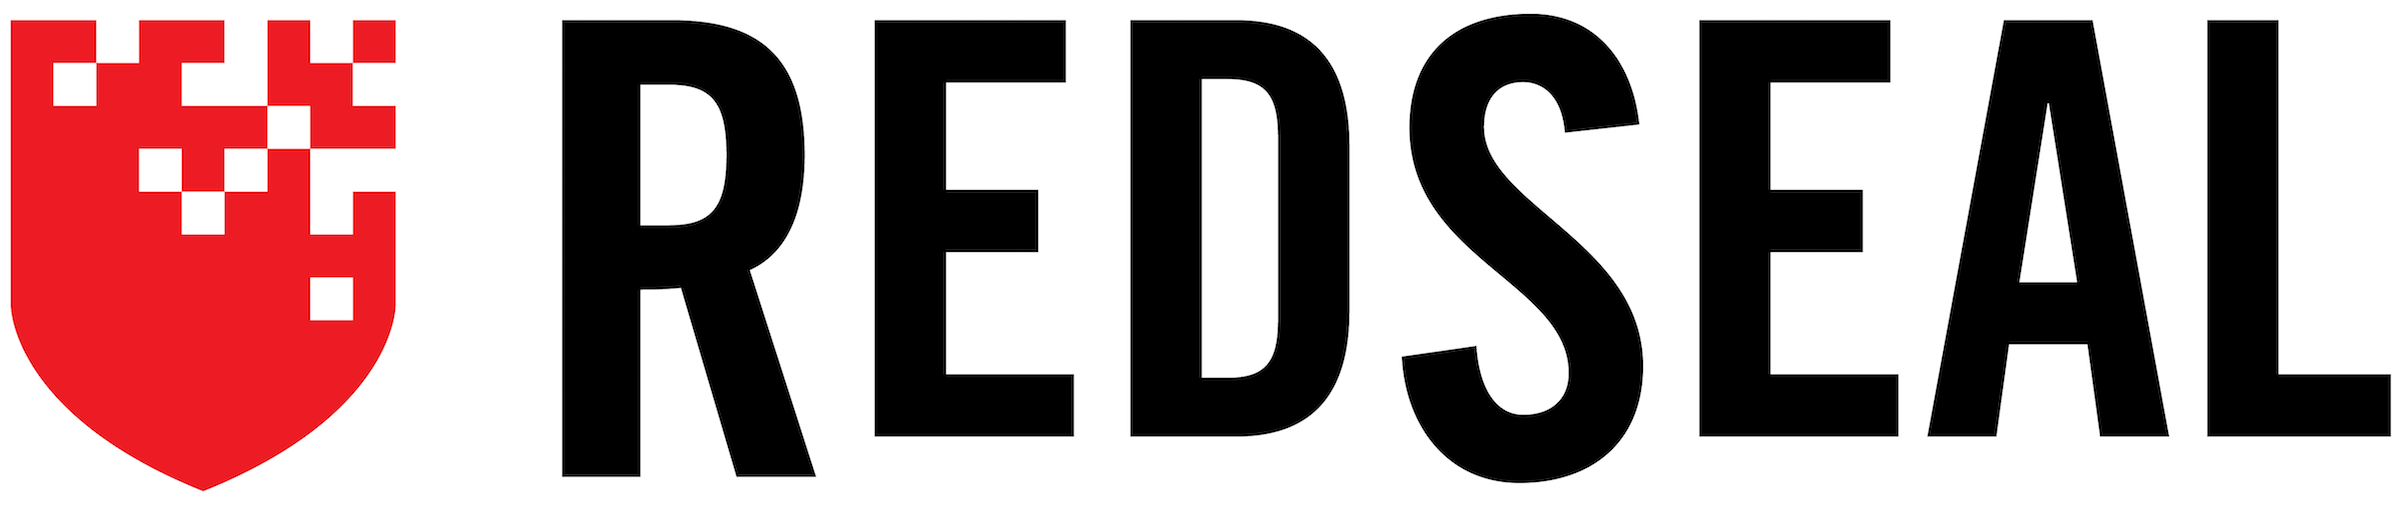 RedSeal_Logo_Hi-Res-1